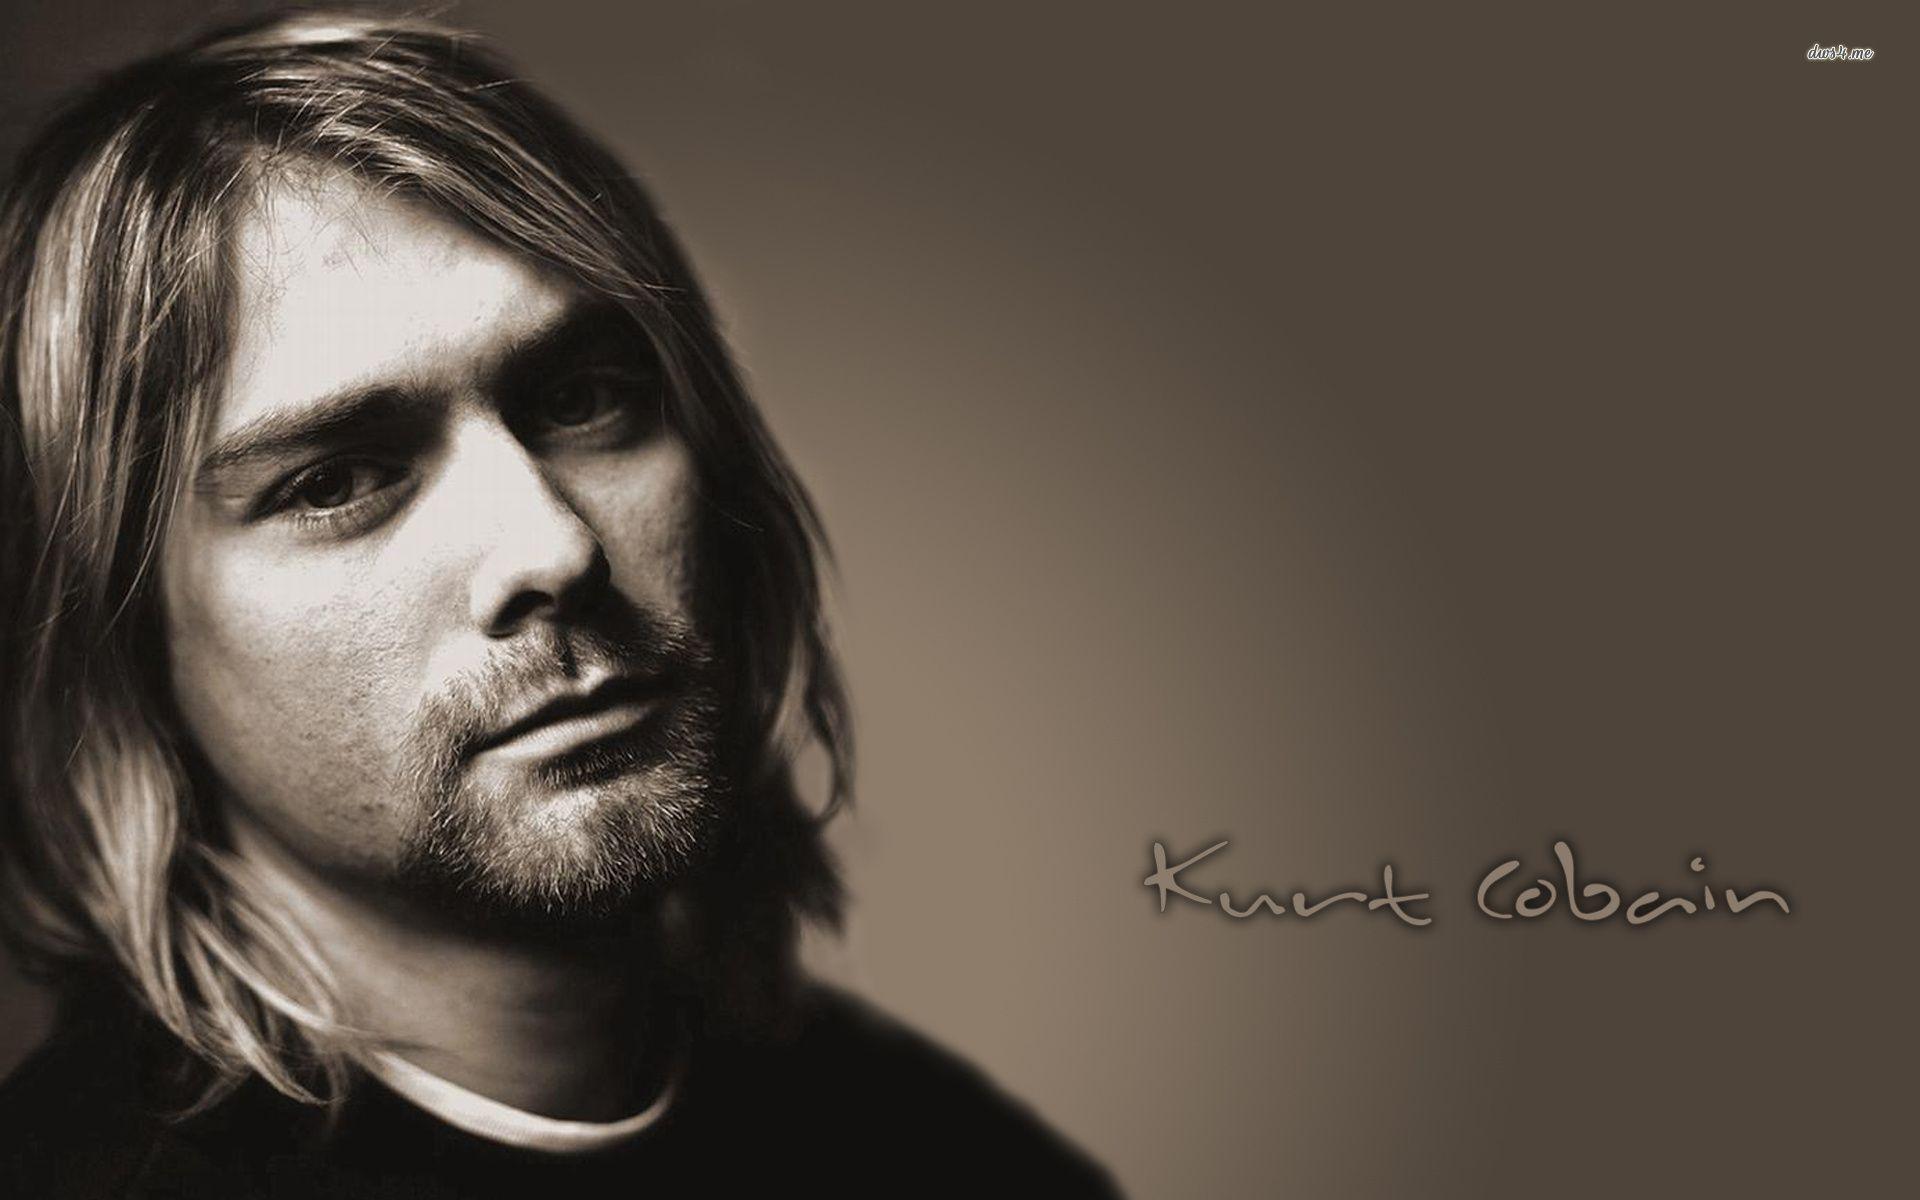 Kurt Cobain quote wallpaper